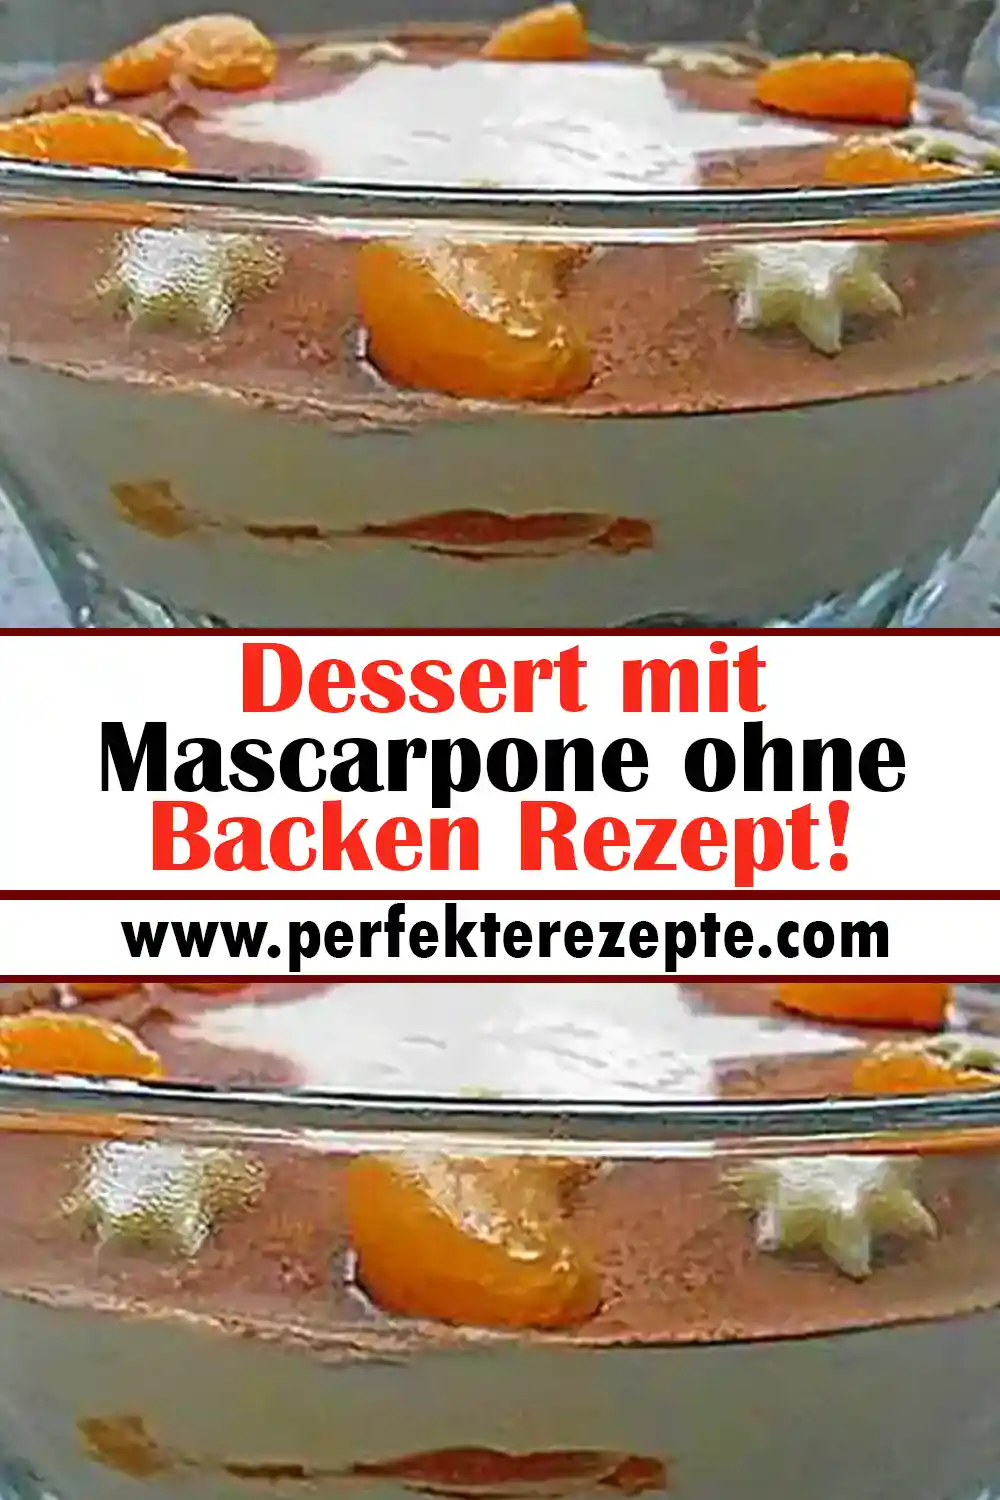 Dessert mit Mascarpone ohne Backen Rezept!